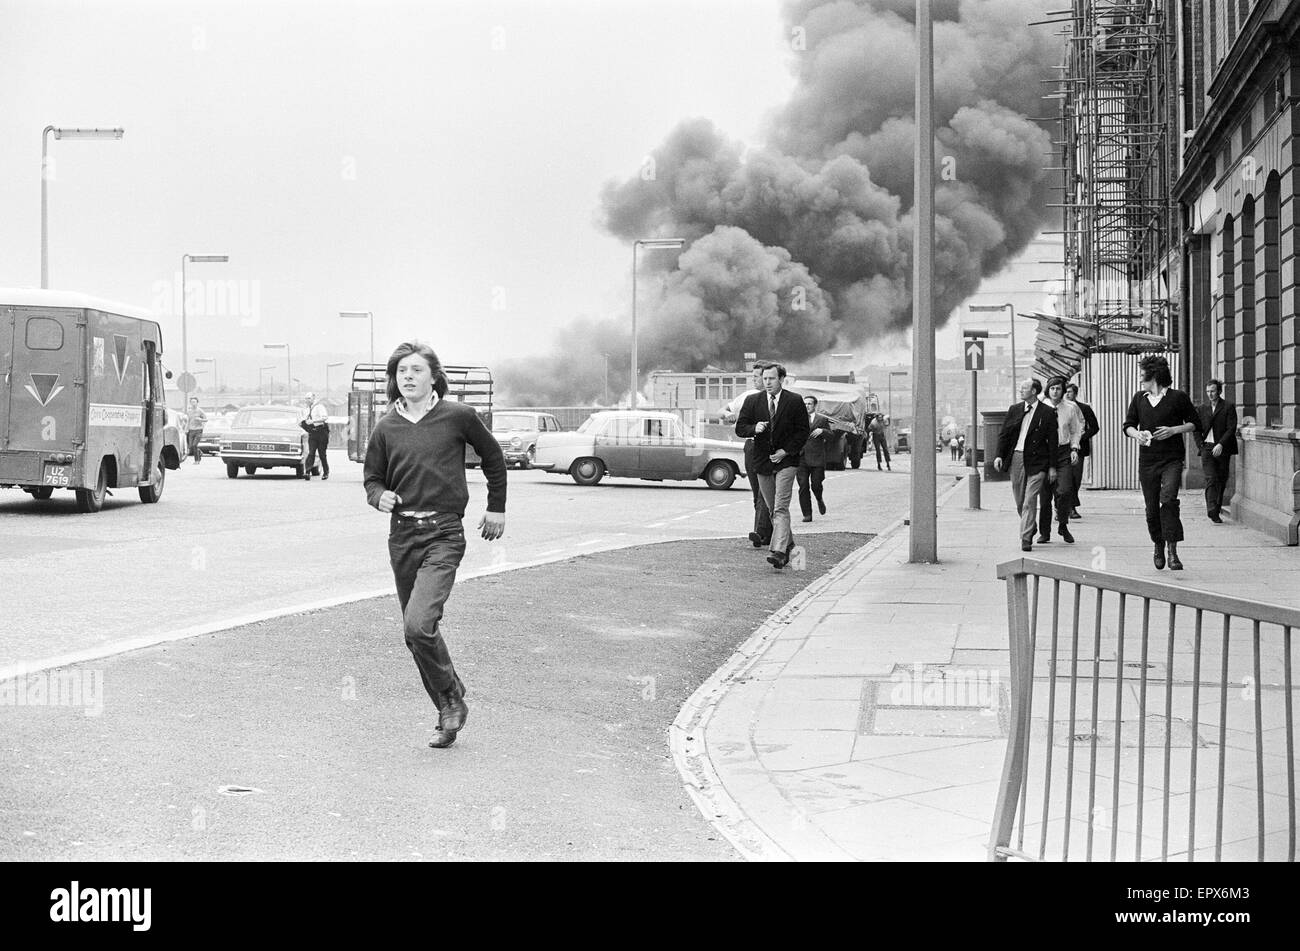 Vendredi sanglant est le nom donné à la bombe perpétrés par l'Armée républicaine irlandaise provisoire (IRA) à Belfast le 21 juillet 1972. Vingt-deux bombes ont explosé dans l'espace de 80 minutes, tuant neuf personnes (dont deux soldats britanniques) et en blessant 130. À Banque D'Images